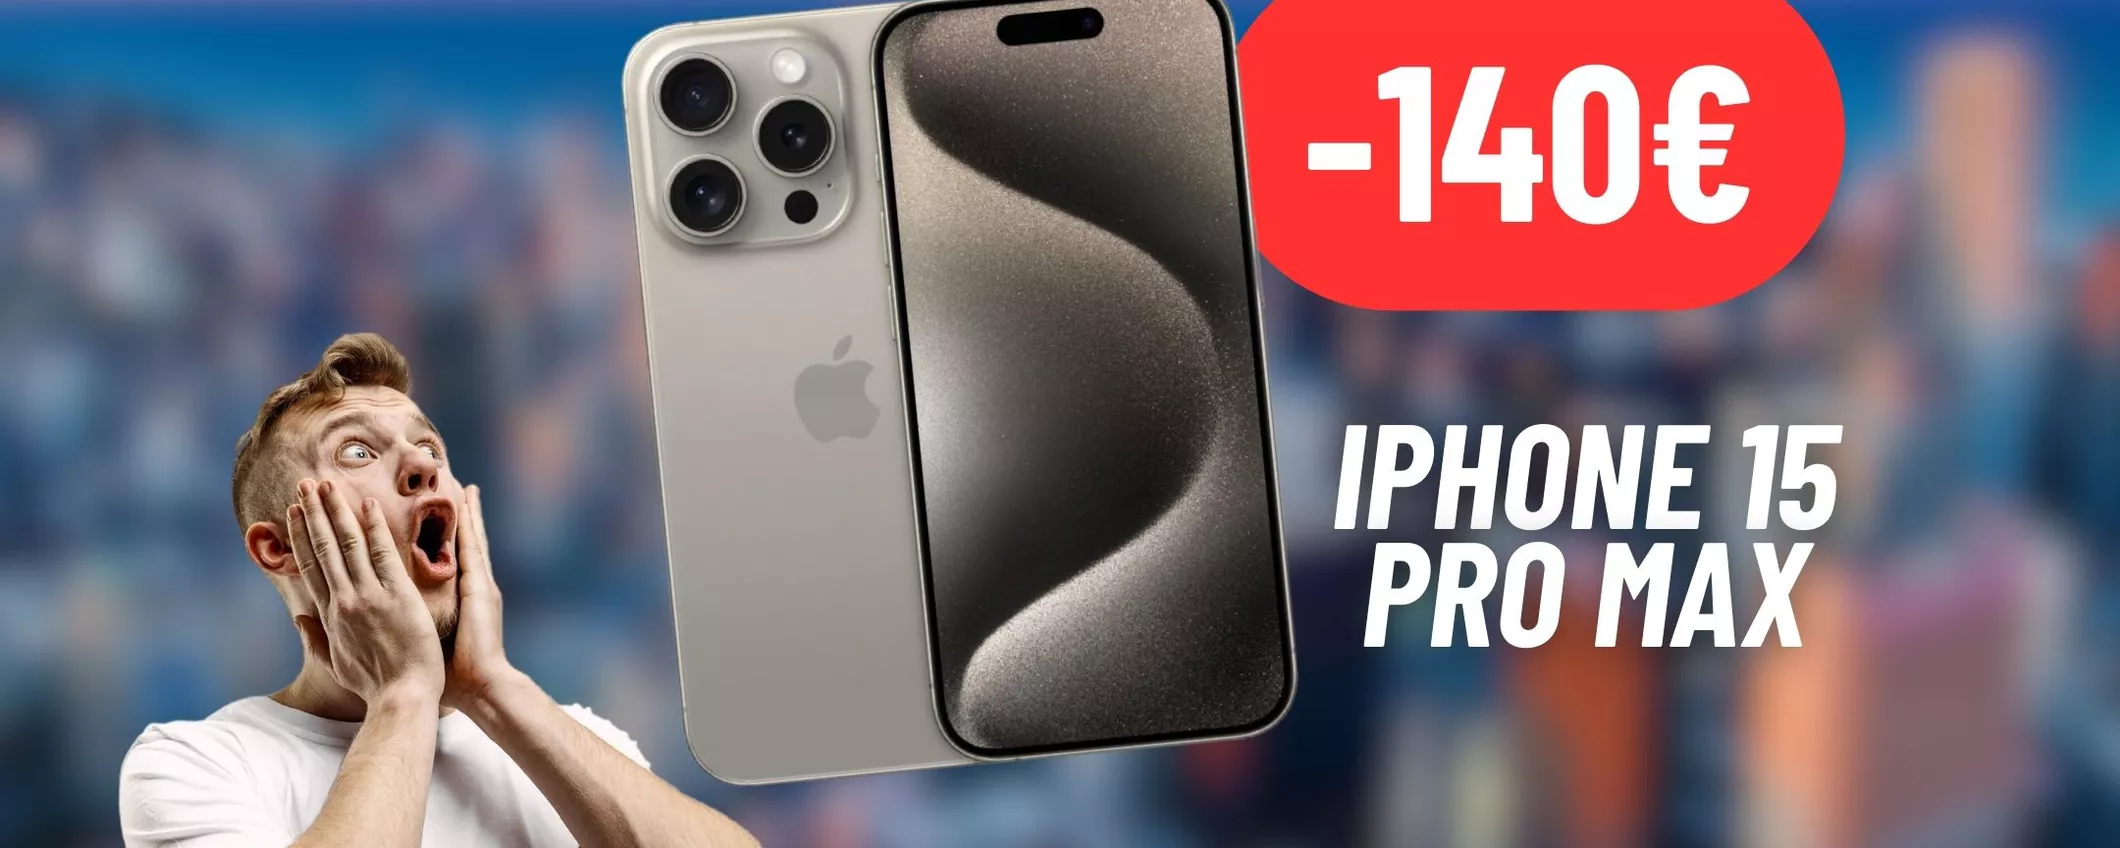 iPhone 15 Pro Max: 140€ di sconto con la promozione eBay